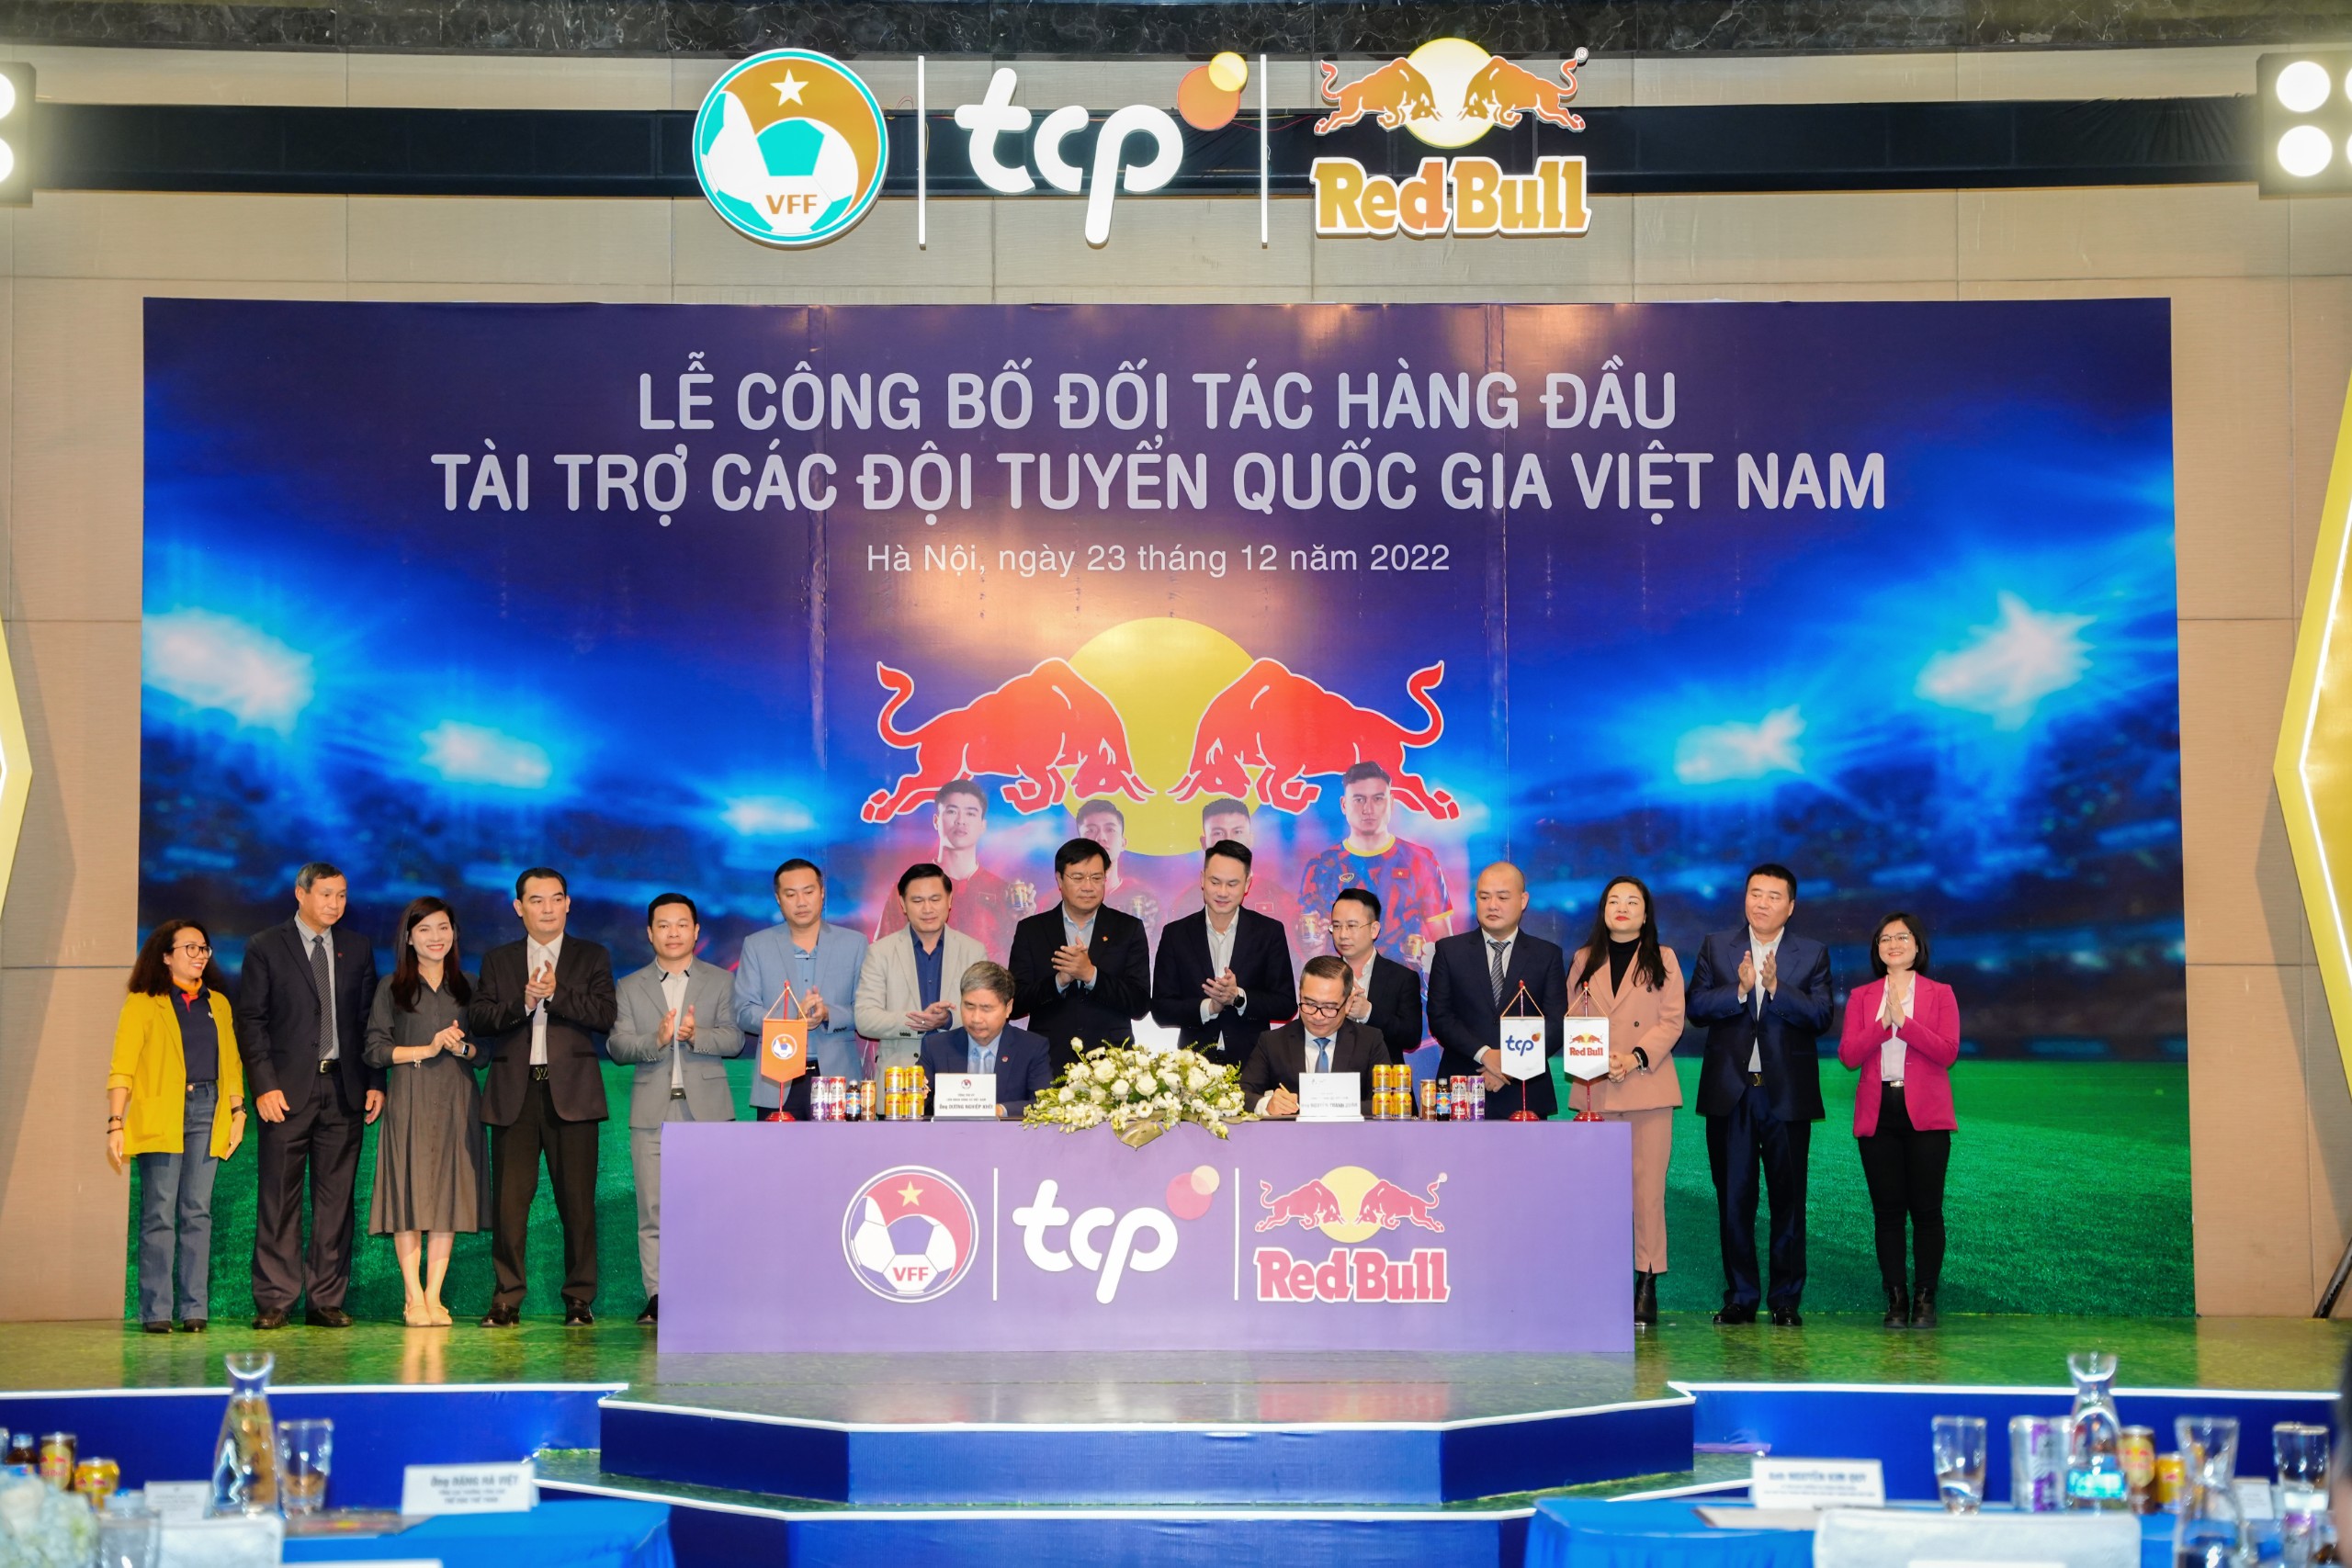 Công ty TCP Việt Nam với nhãn hàng Red Bull là nhà tài trợ hàng đầu của các đội tuyển Quốc gia Việt Nam